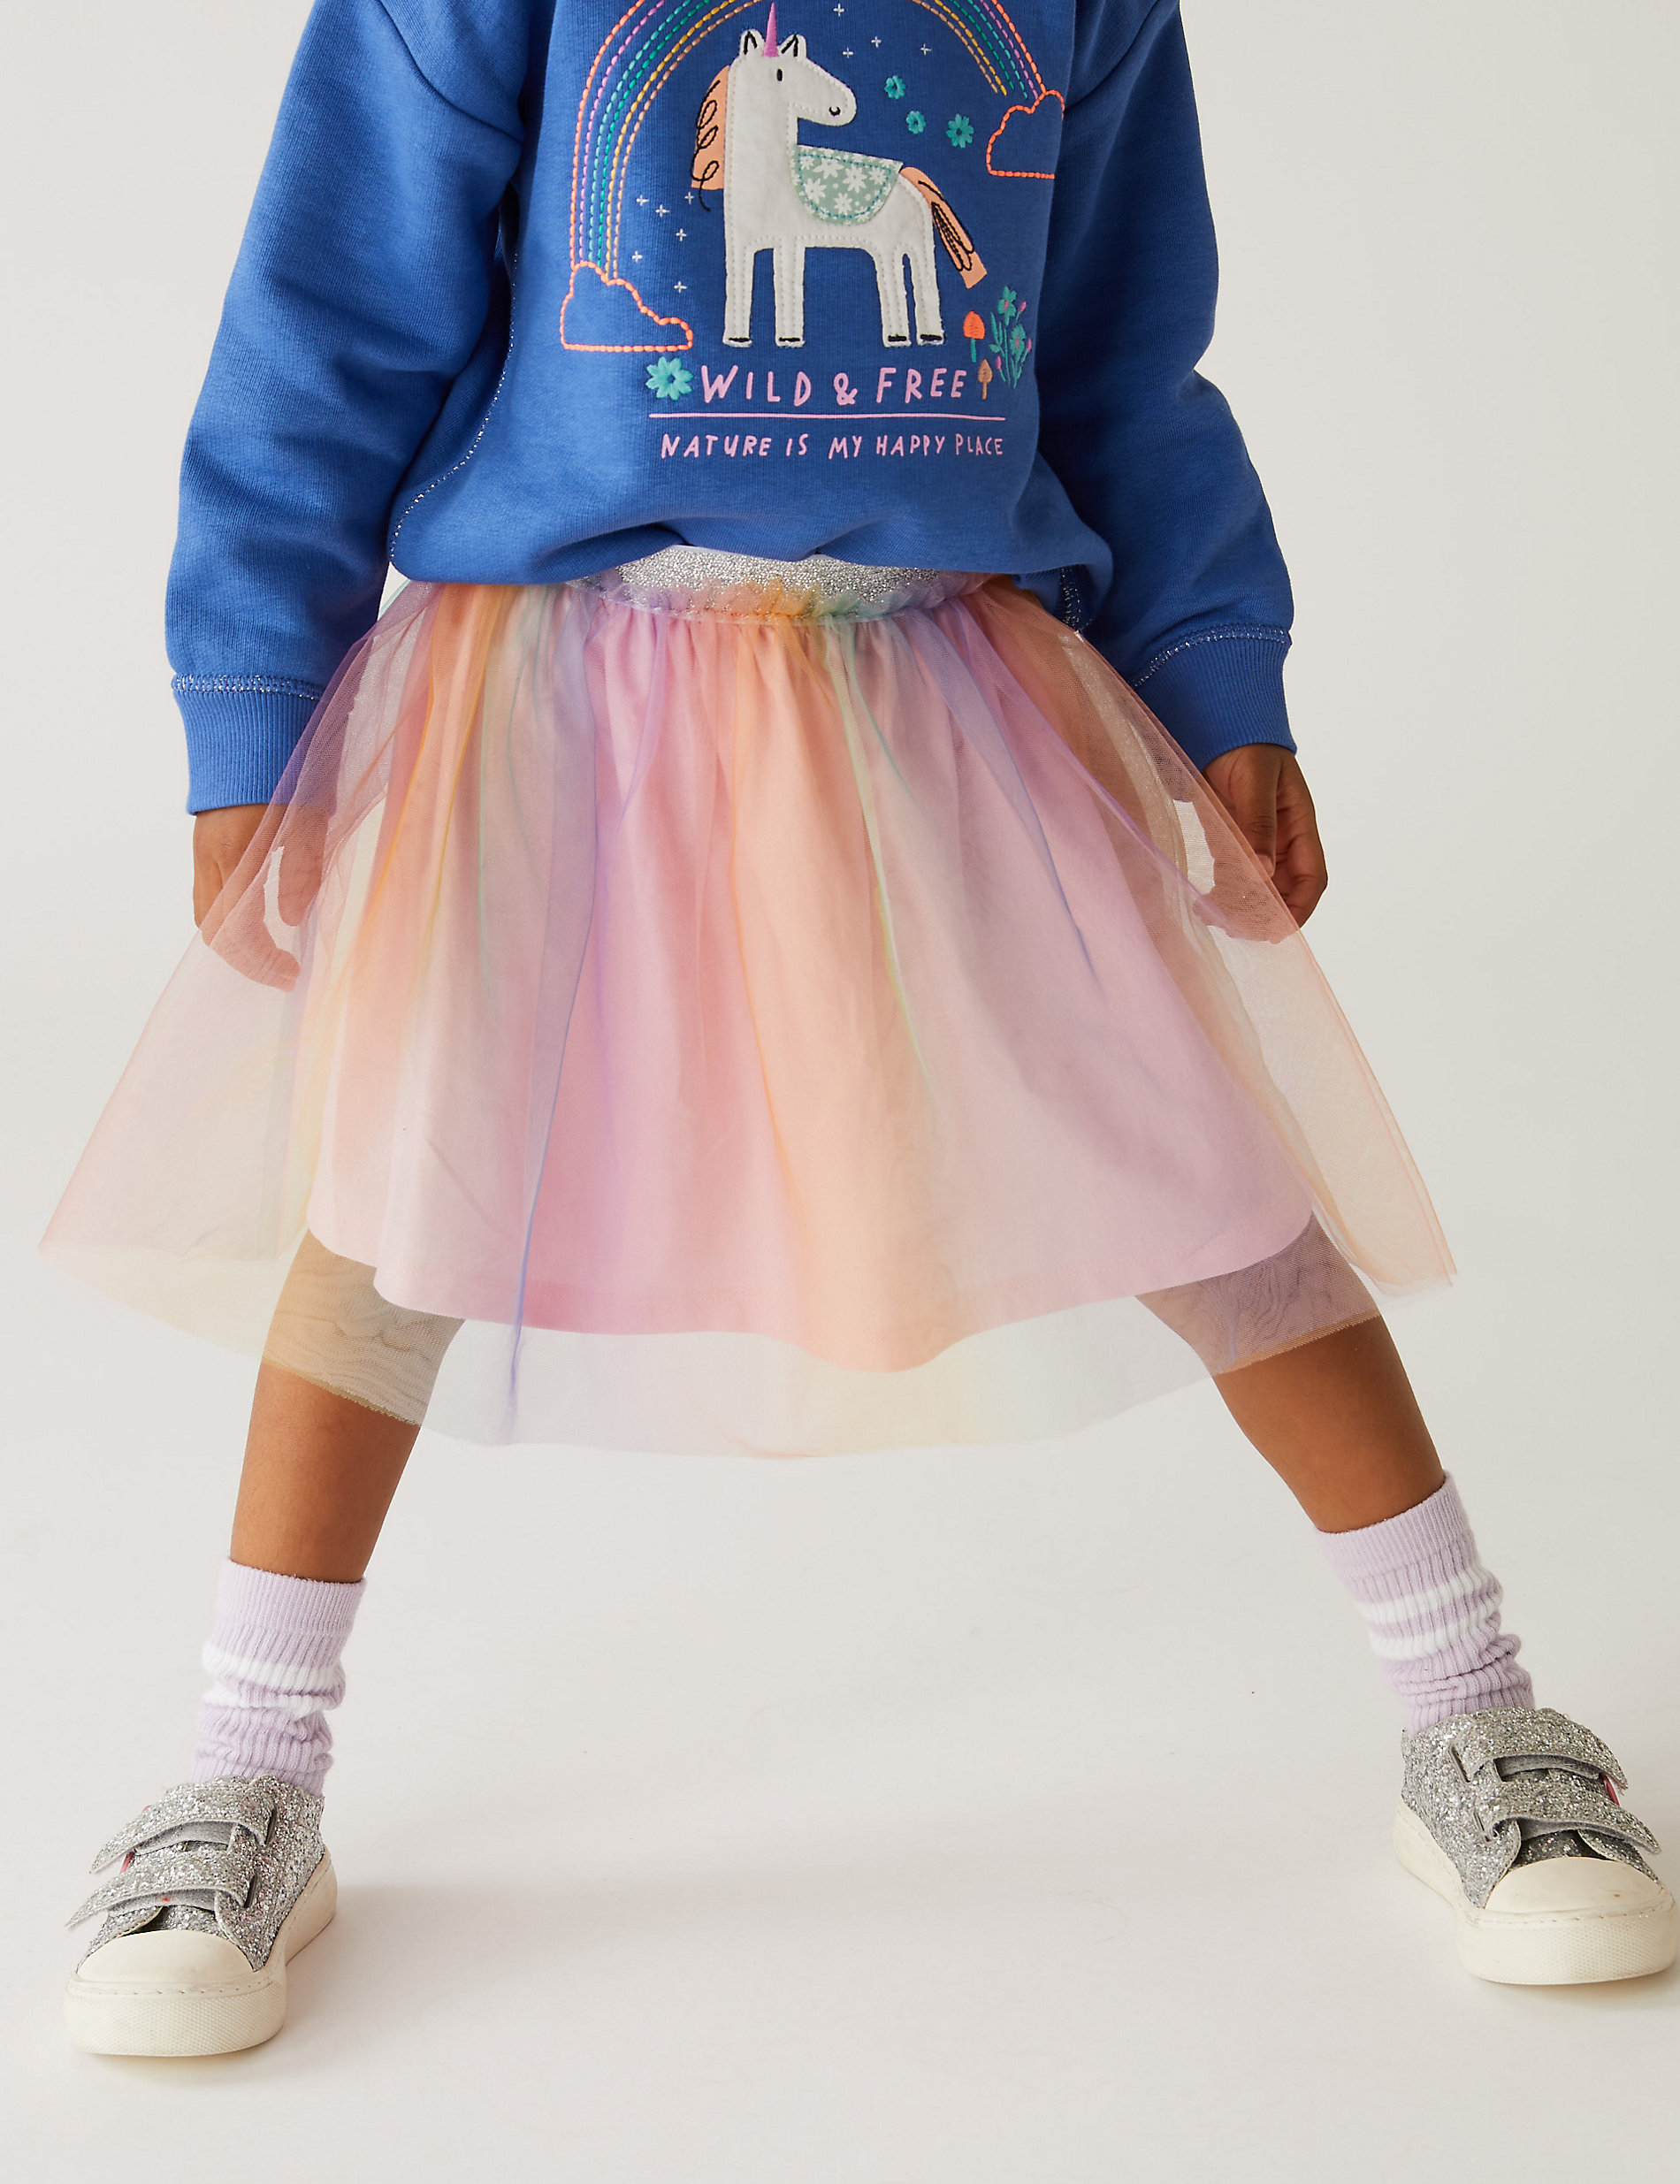 Rainbow Tutu Skirt (2-7 Yrs)